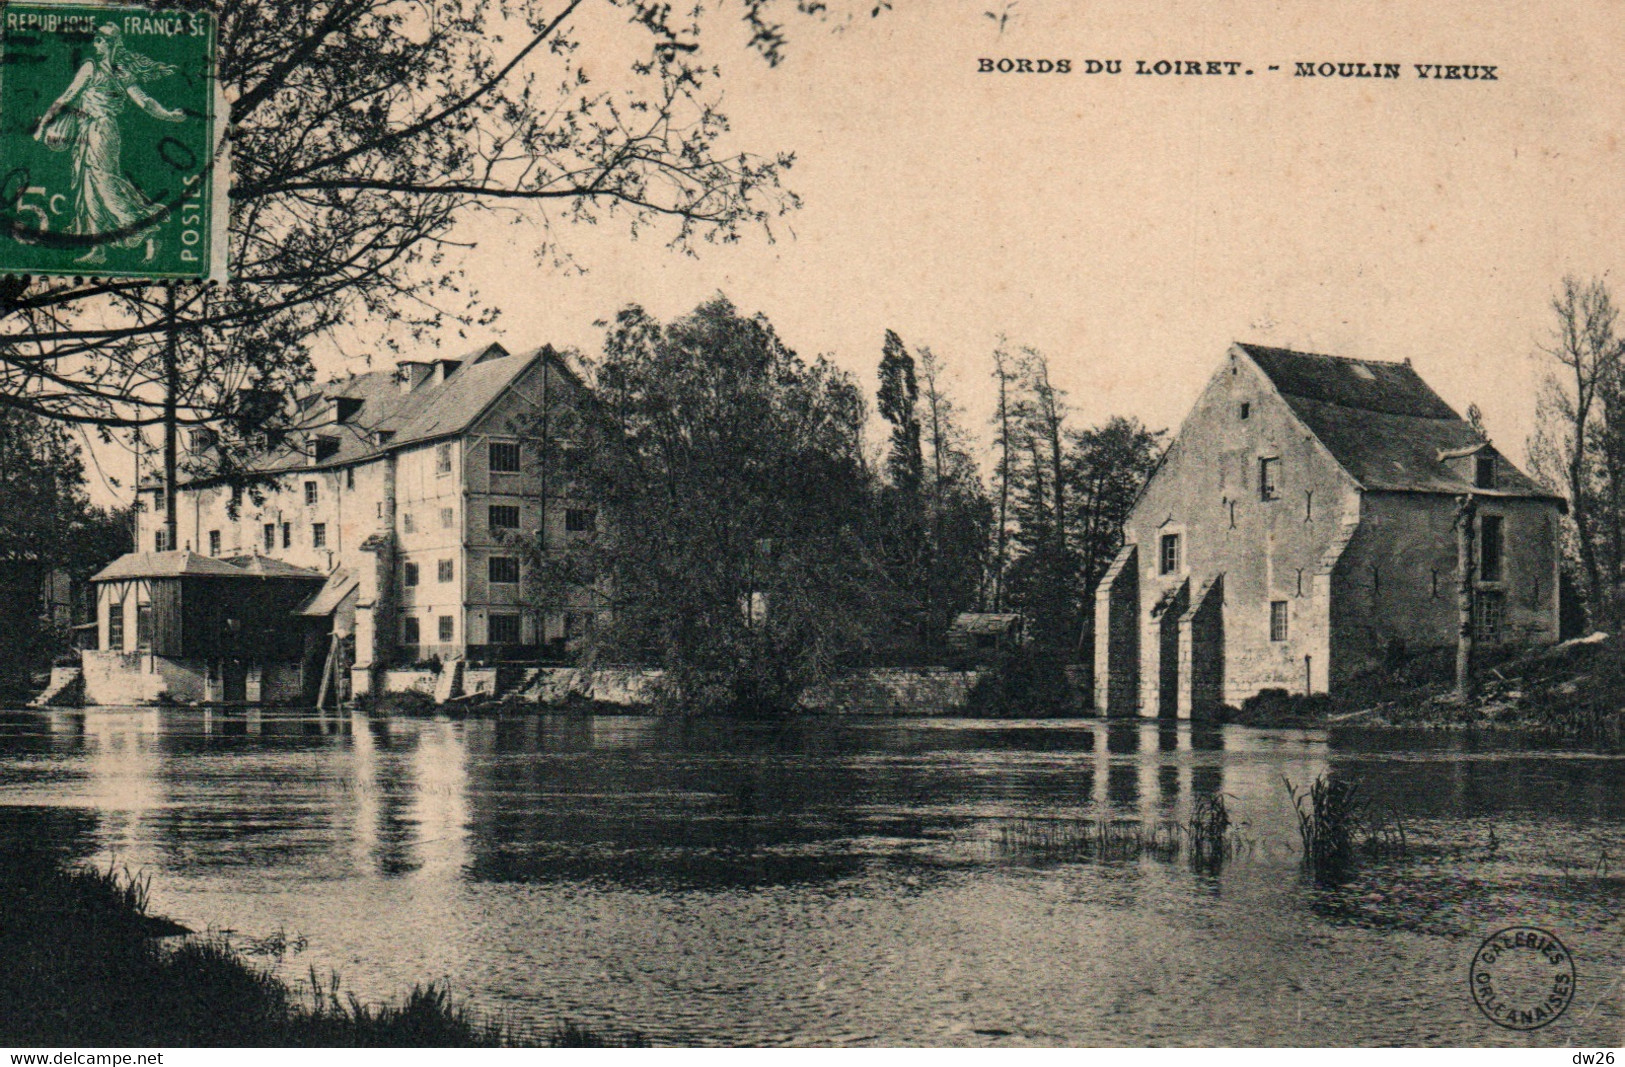 Moulins à Eau: Bords Du Loiret, Moulin Vieux - Edition Galeries Orléanaises - Water Mills